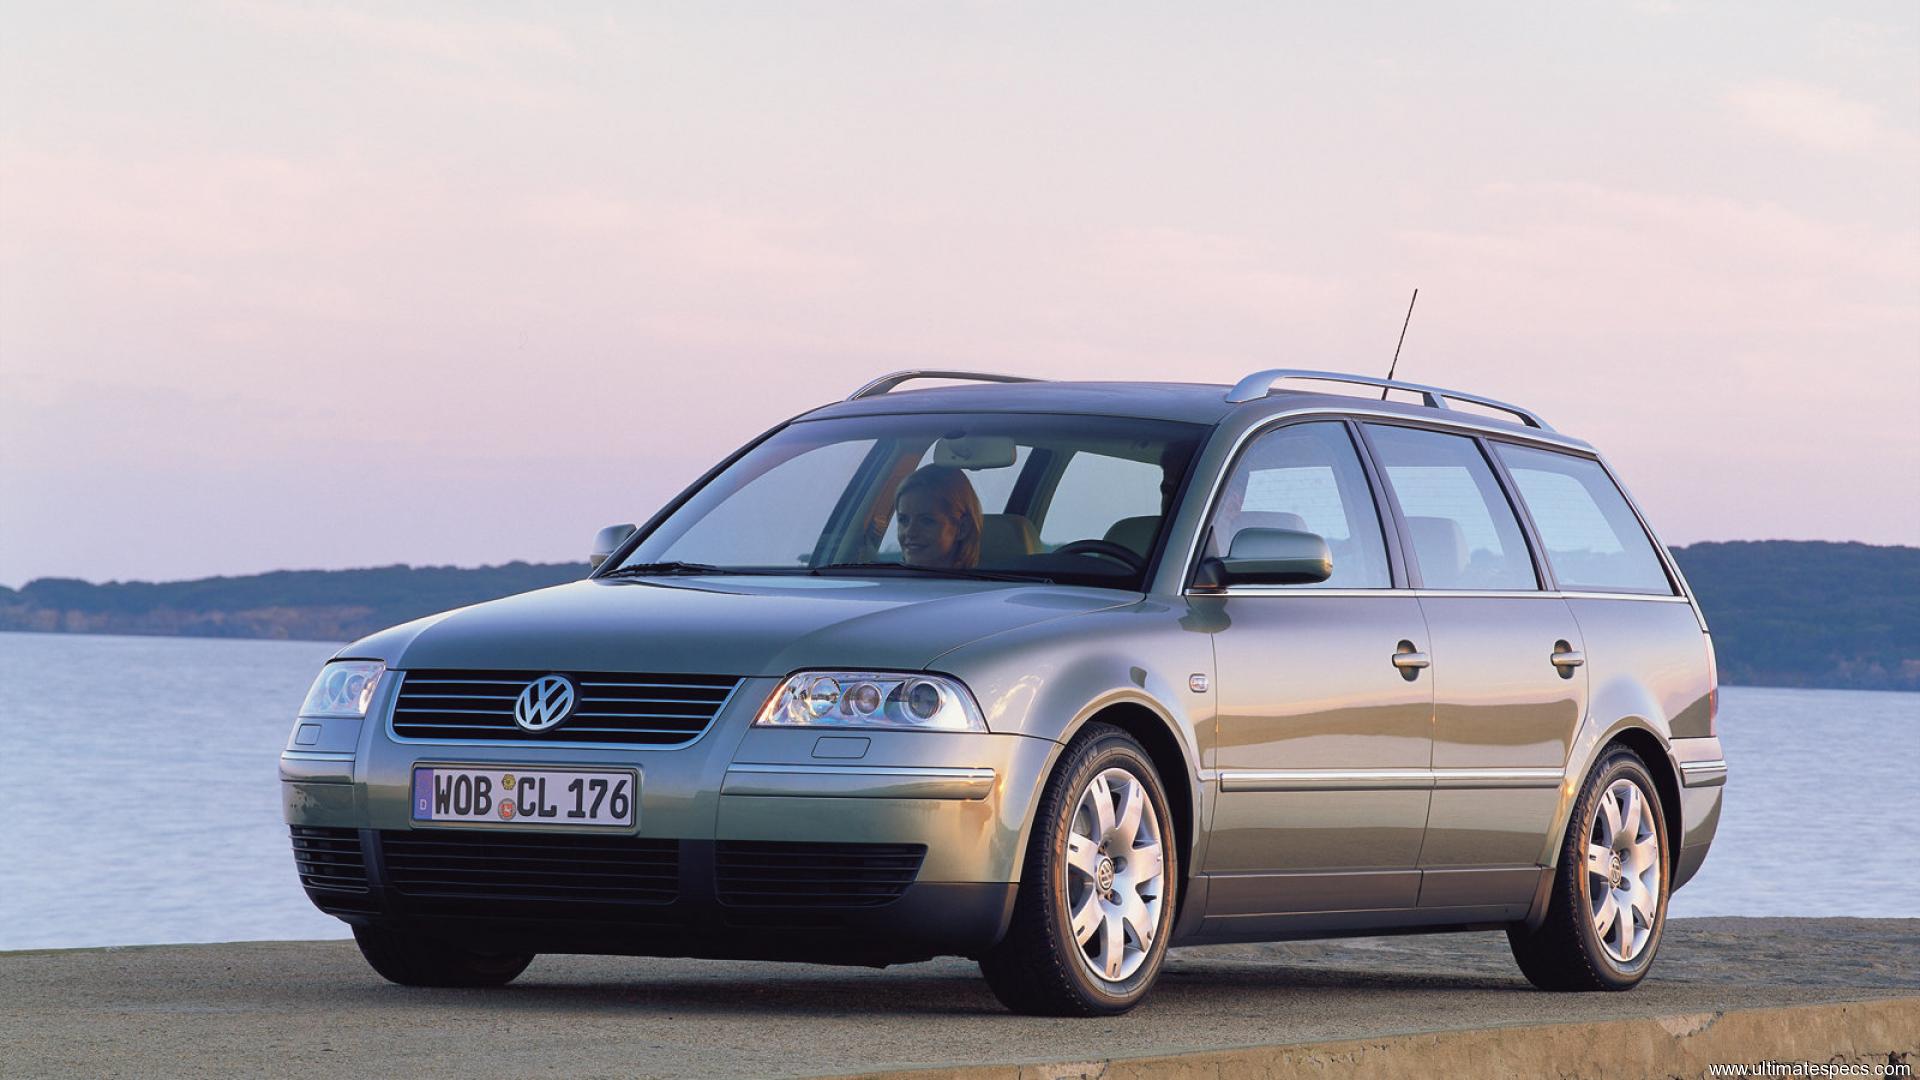 Volkswagen b5 универсал. Volkswagen Passat универсал 2000. Volkswagen Passat b5 универсал. Volkswagen Passat b5 variant. Фольксваген Пассат b5 универсал.